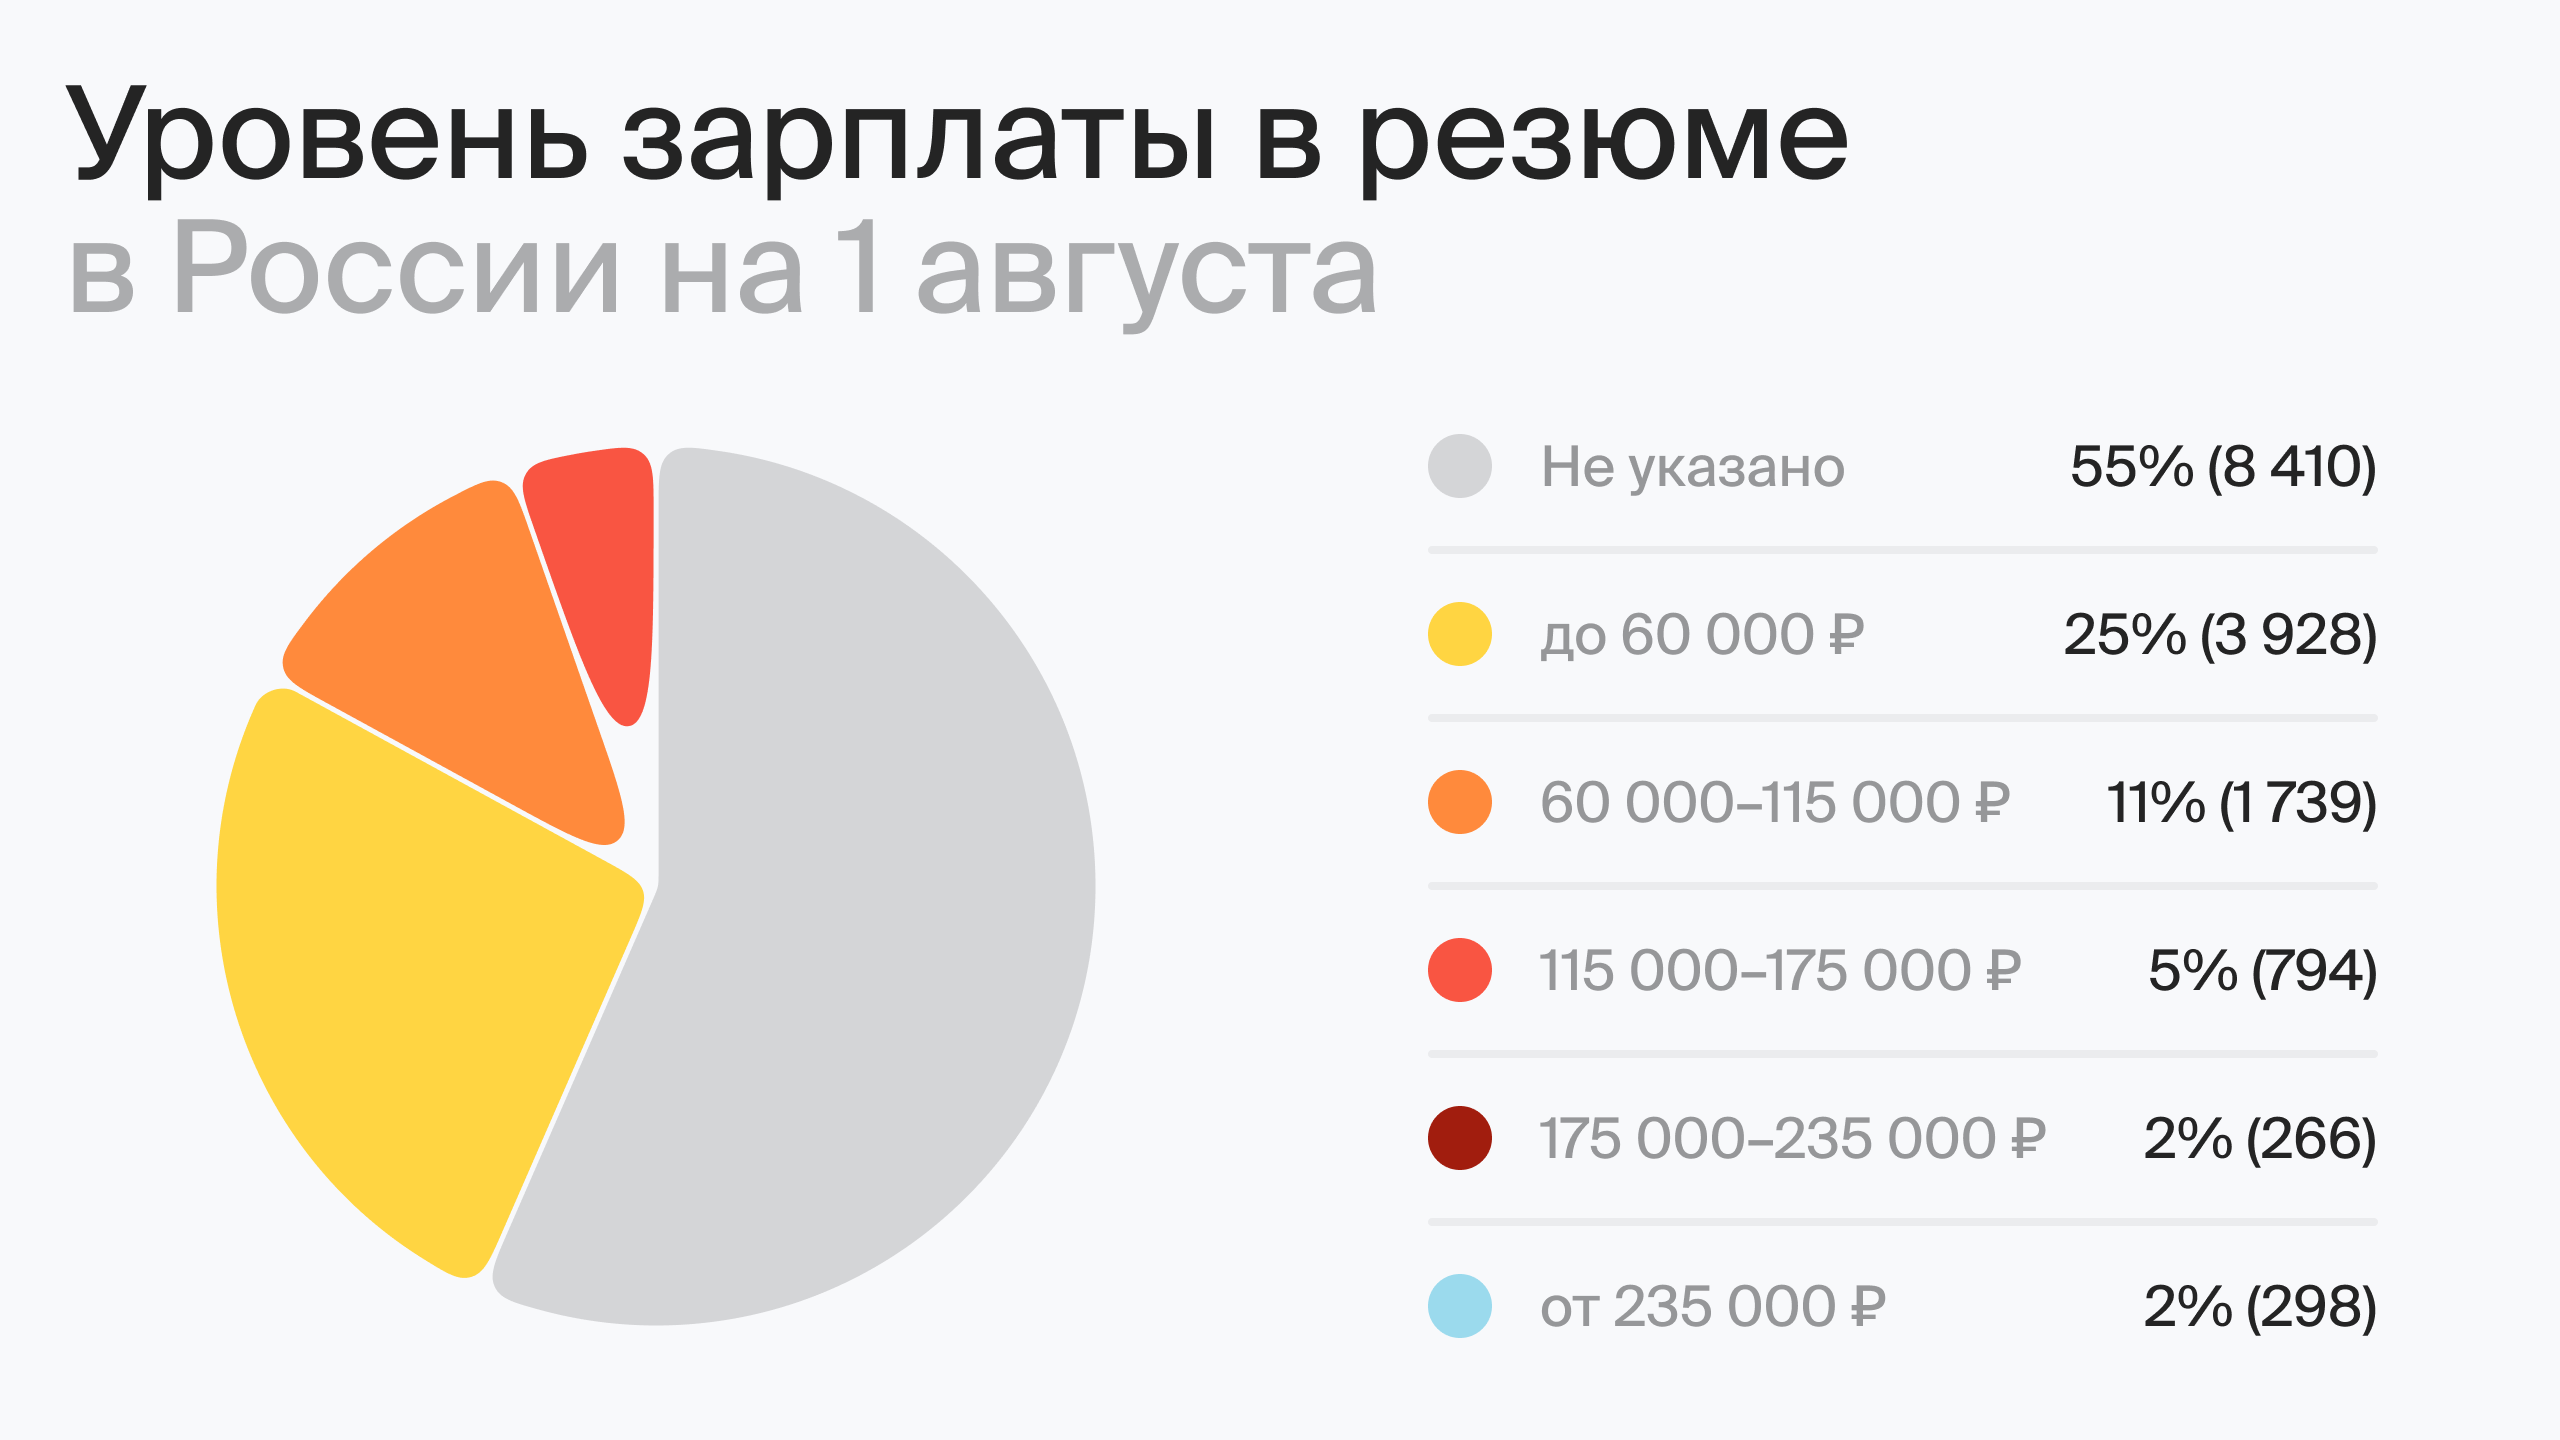 Уровень зарплаты в резюме в России на 1 августа (по данным hh.ru)